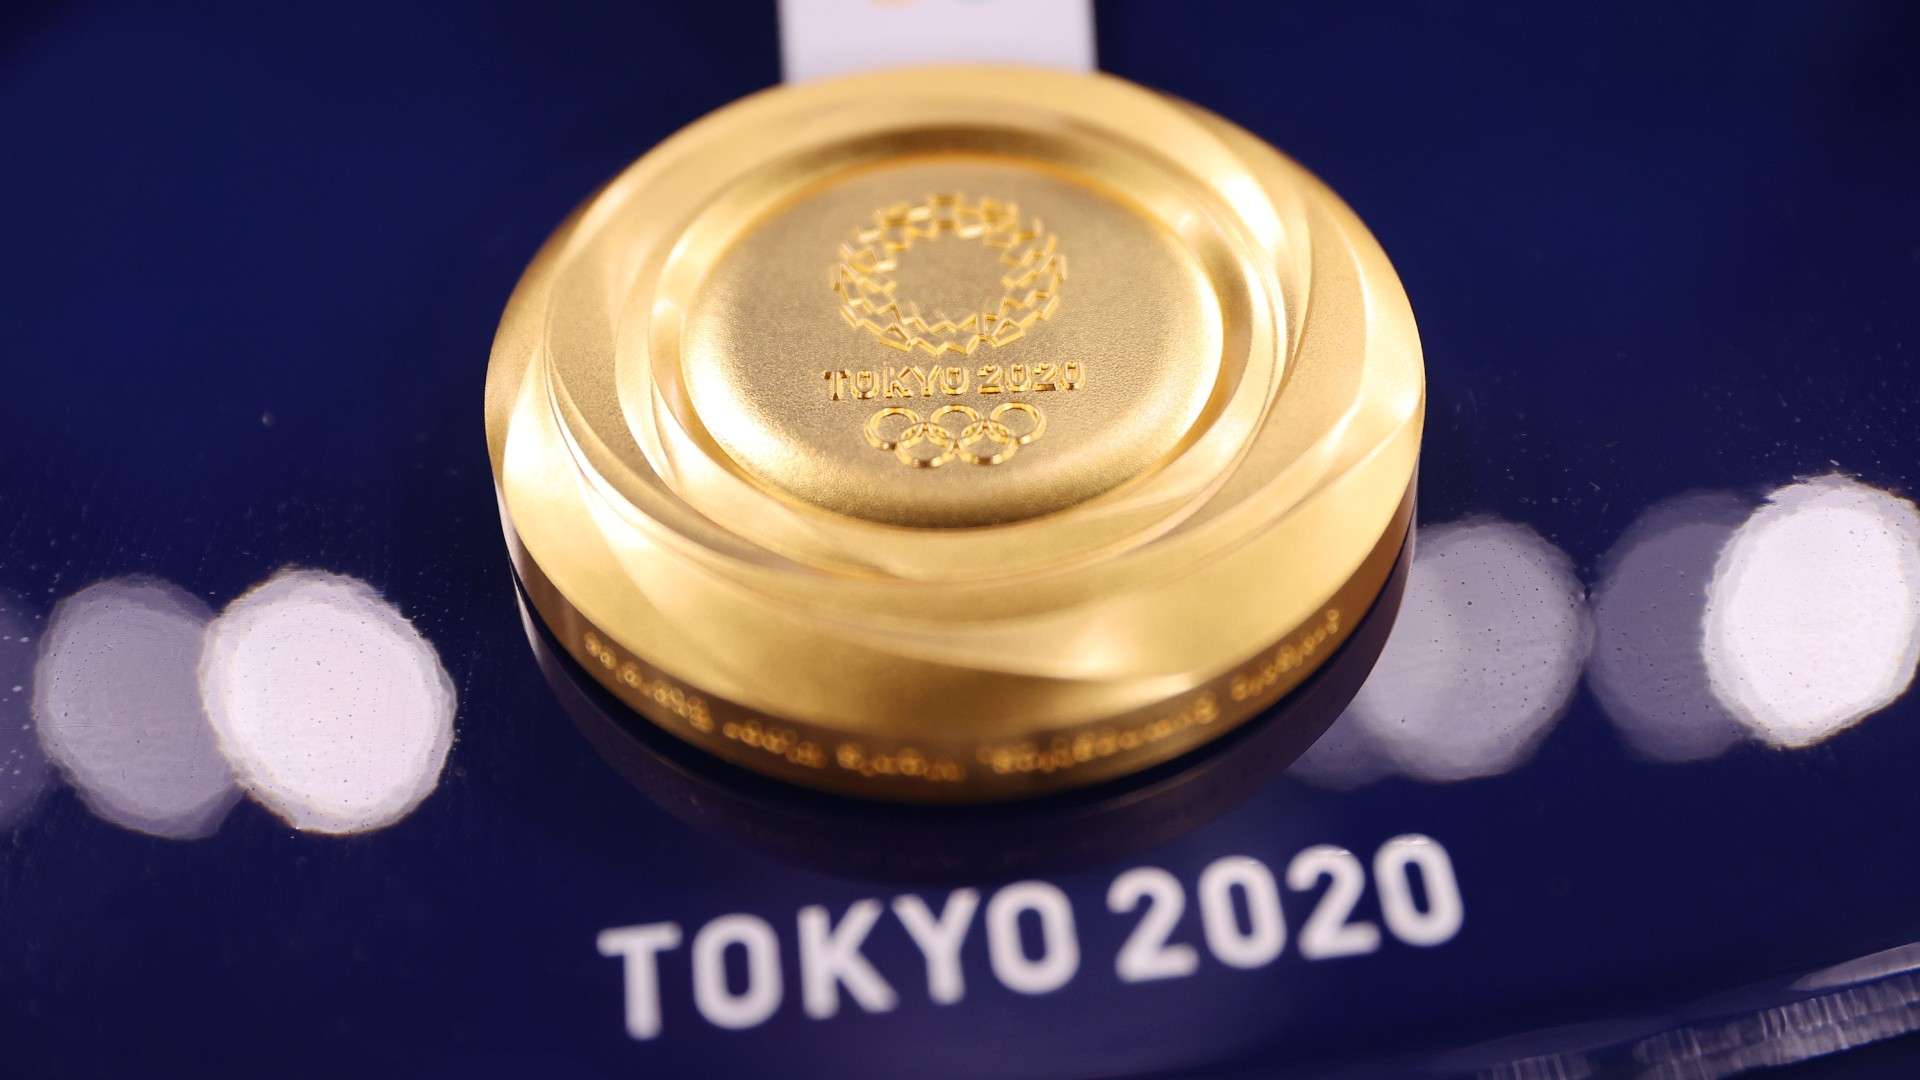 tokyo 2020 gold medal